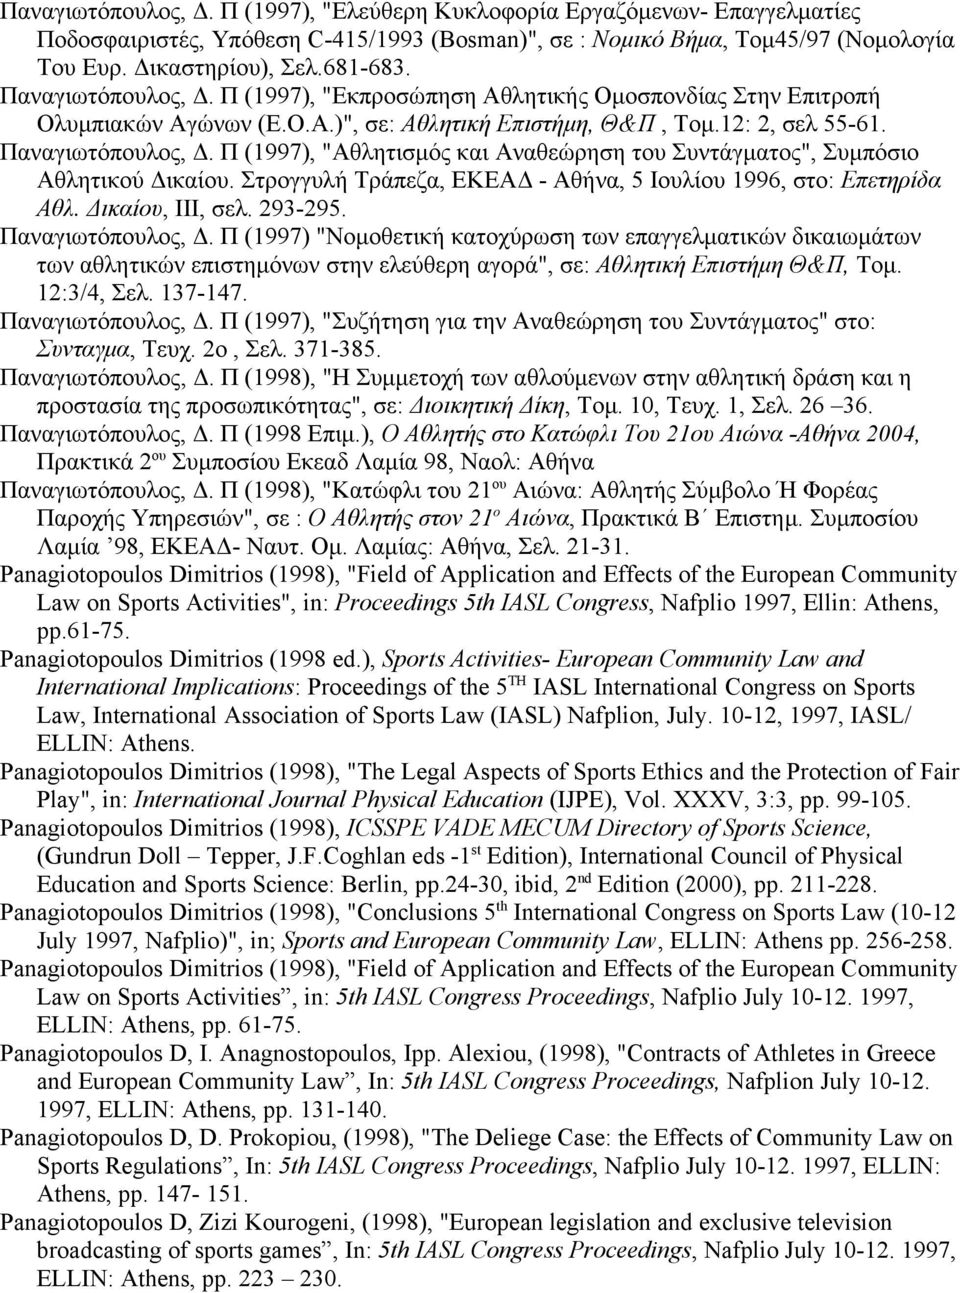 Π (1997), "Αθλητισμός και Αναθεώρηση του Συντάγματος", Συμπόσιο Αθλητικού Δικαίου. Στρογγυλή Τράπεζα, ΕΚΕΑΔ - Αθήνα, 5 Ιουλίου 1996, στο: Επετηρίδα Αθλ. Δικαίου, ΙΙΙ, σελ. 293-295. Παναγιωτόπουλος, Δ.